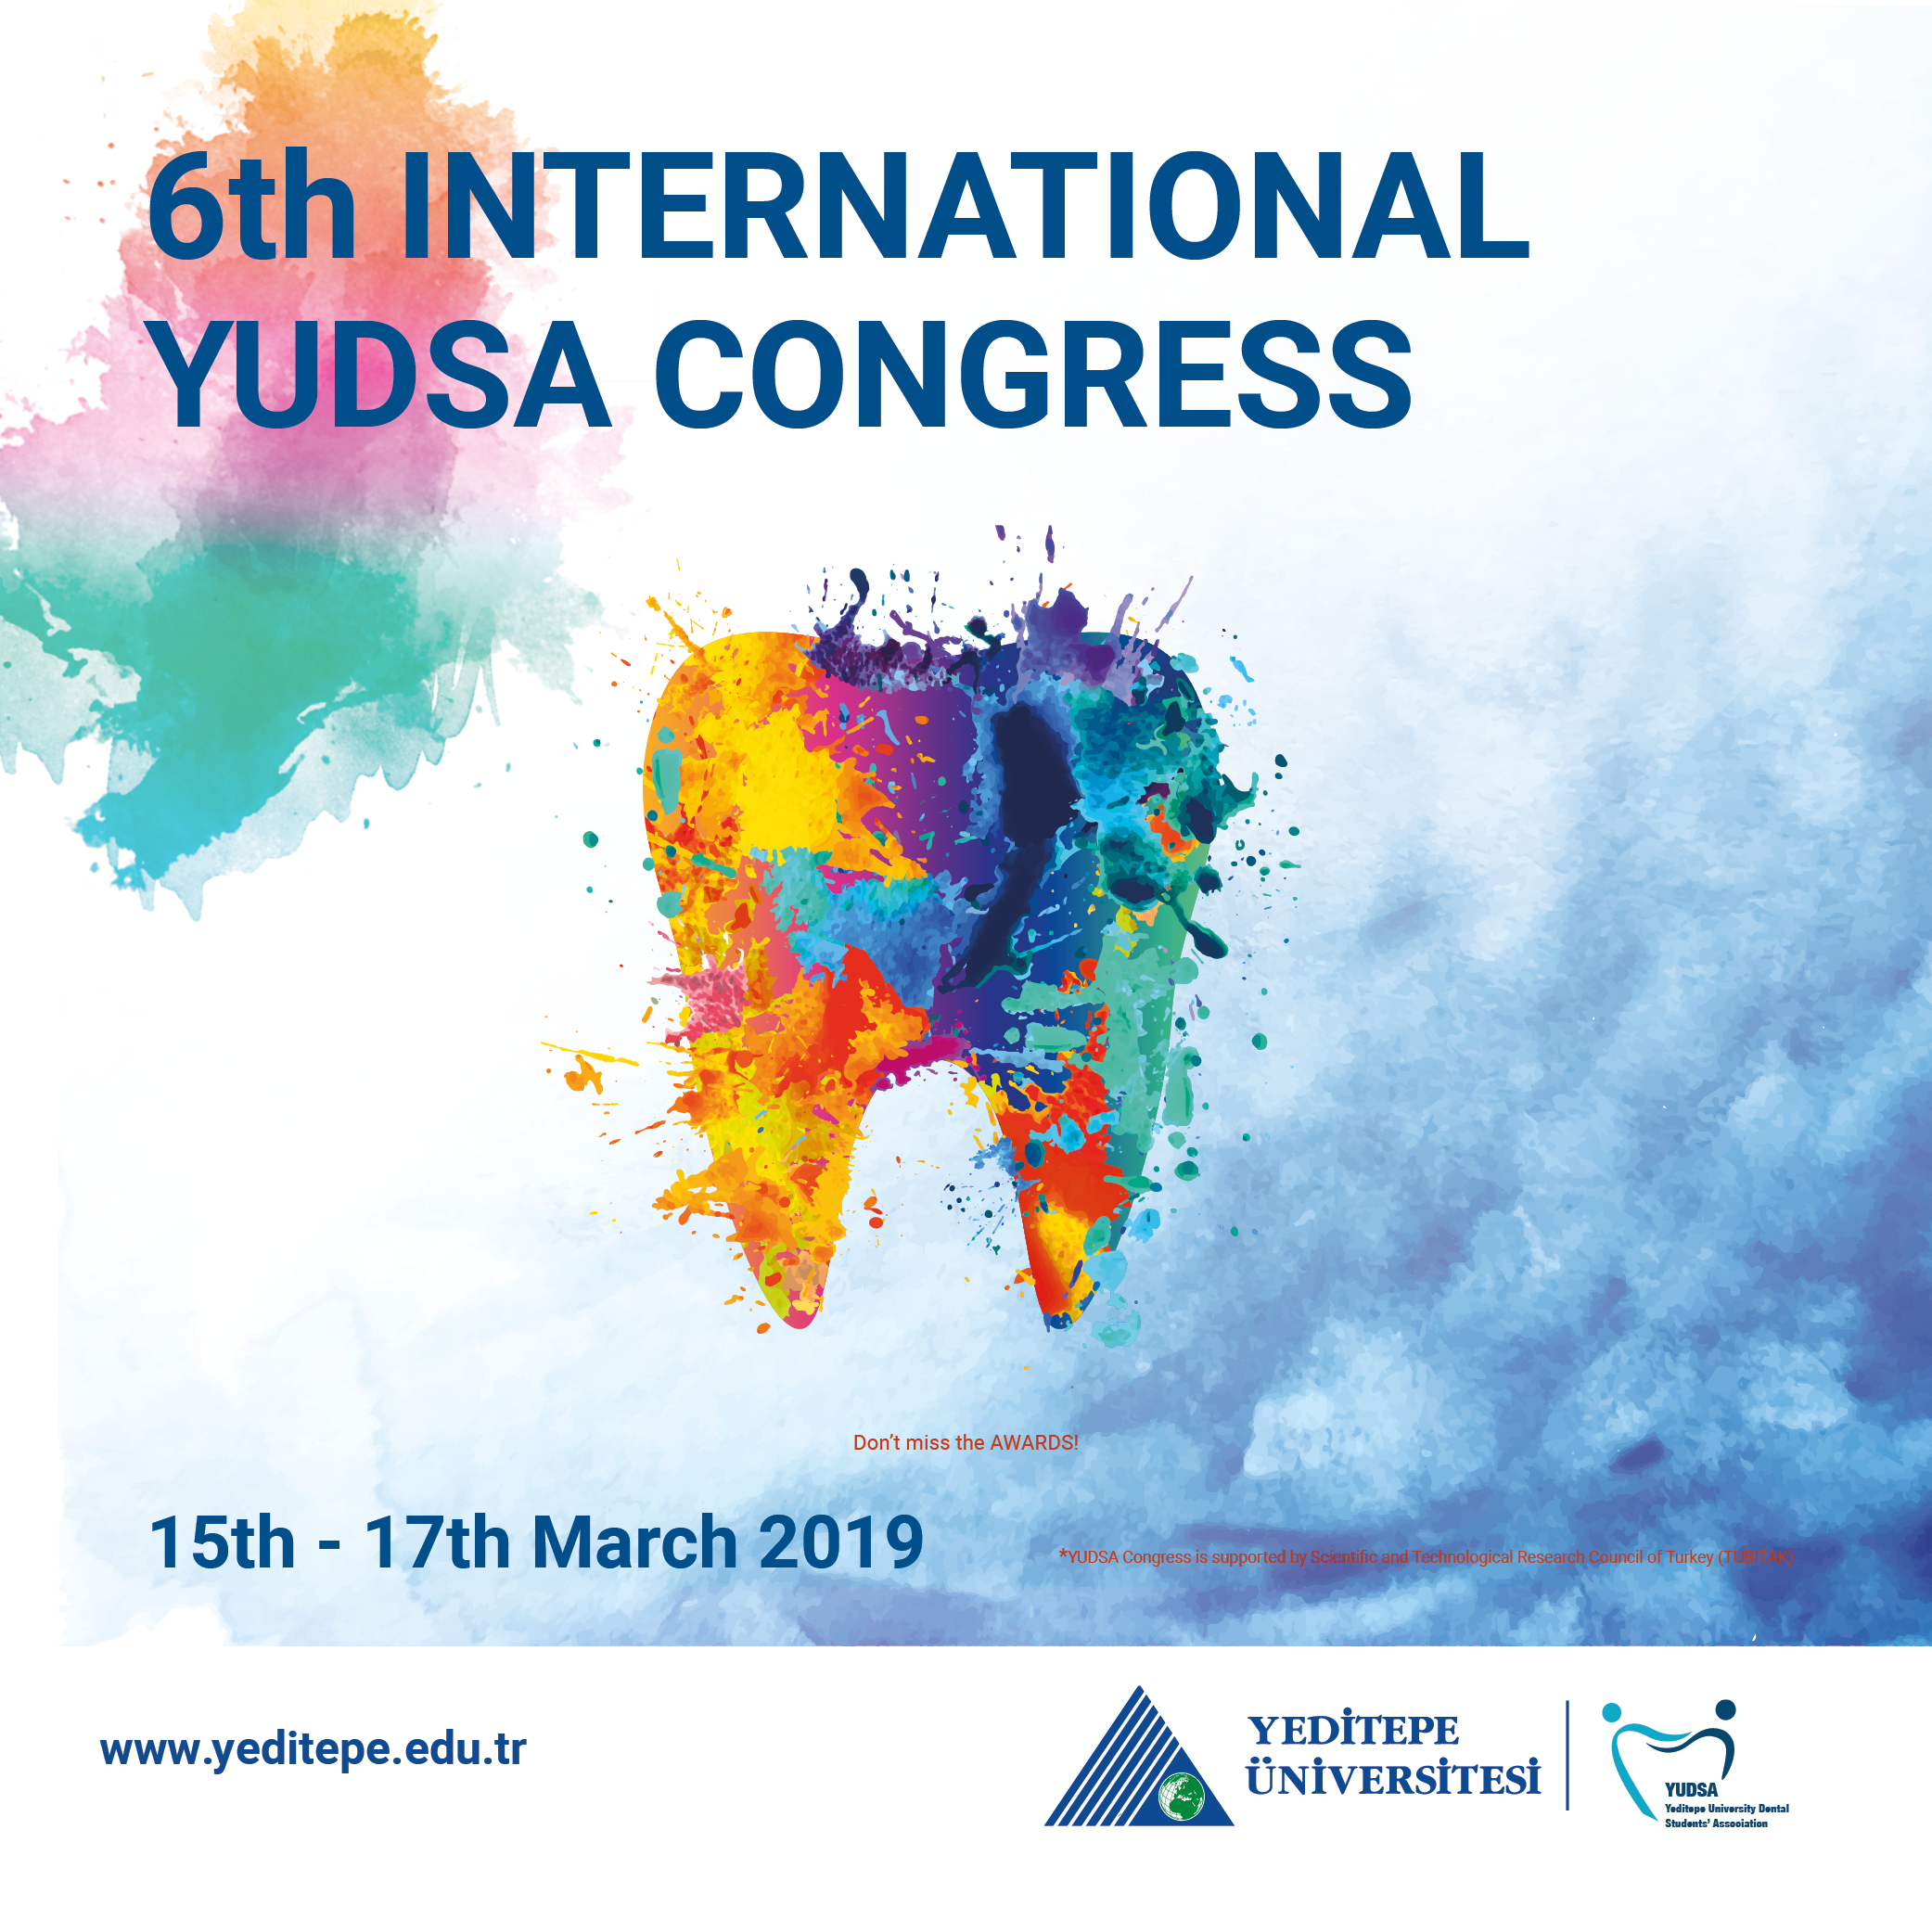 YUDSA - 6th INTERNATIONAL YUDSA CONGRESS